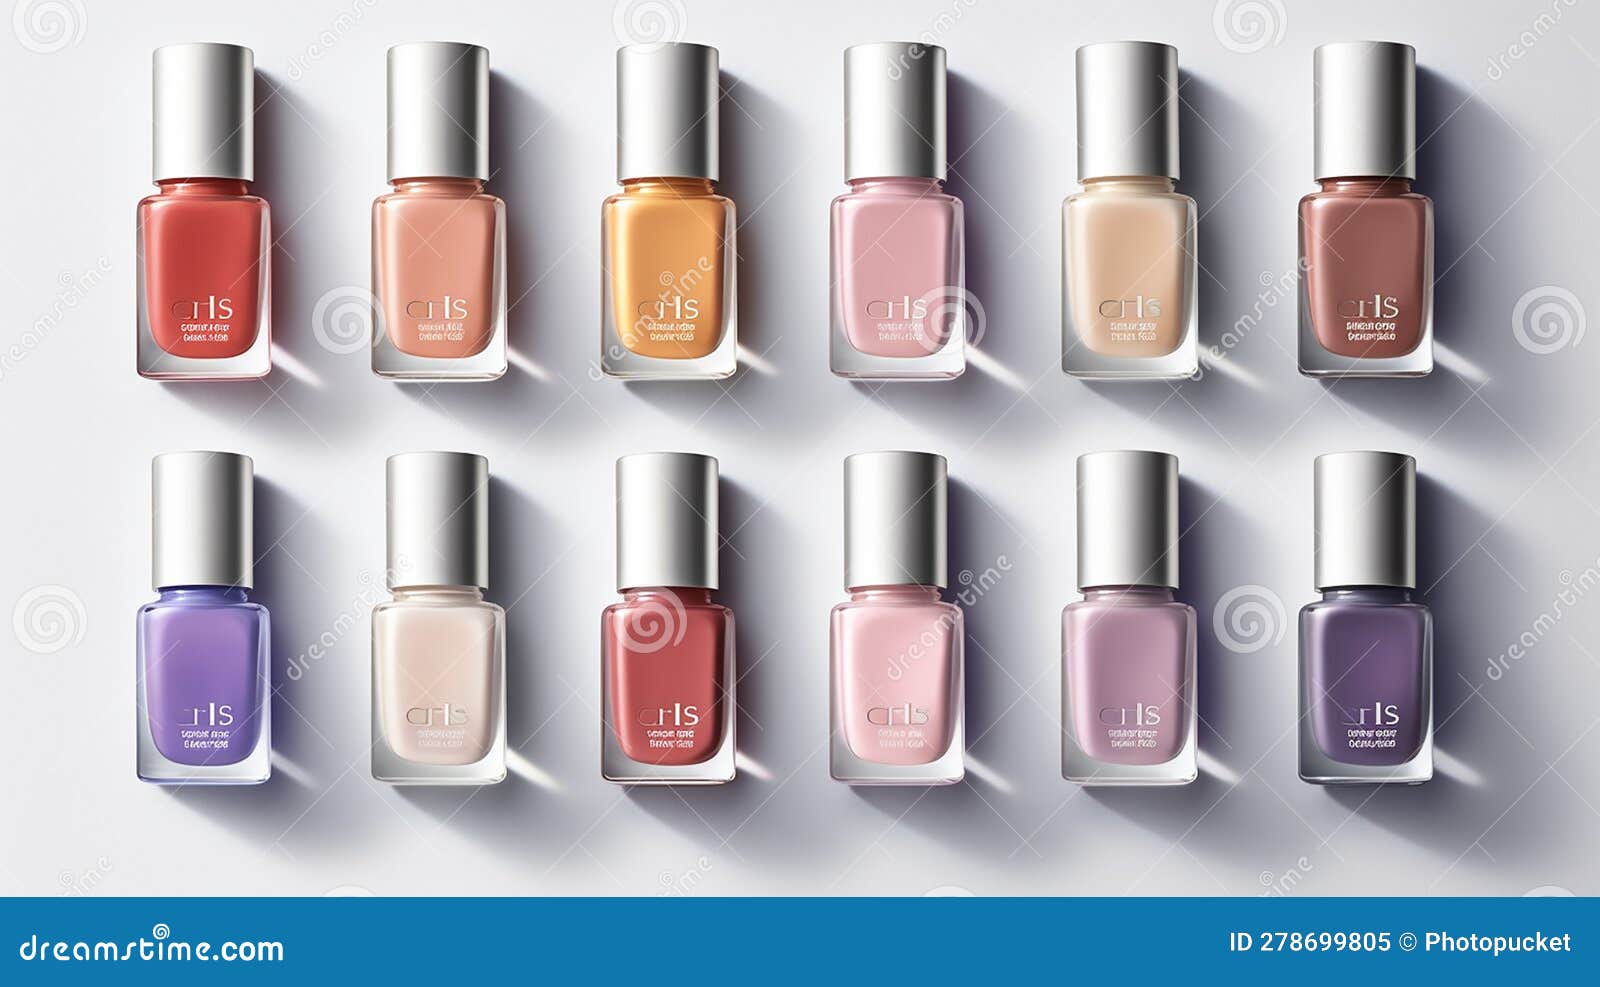 OPI French Soiree Mini Nail Polish Set 4 x 3.75ml | Free US Shipping |  lookfantastic